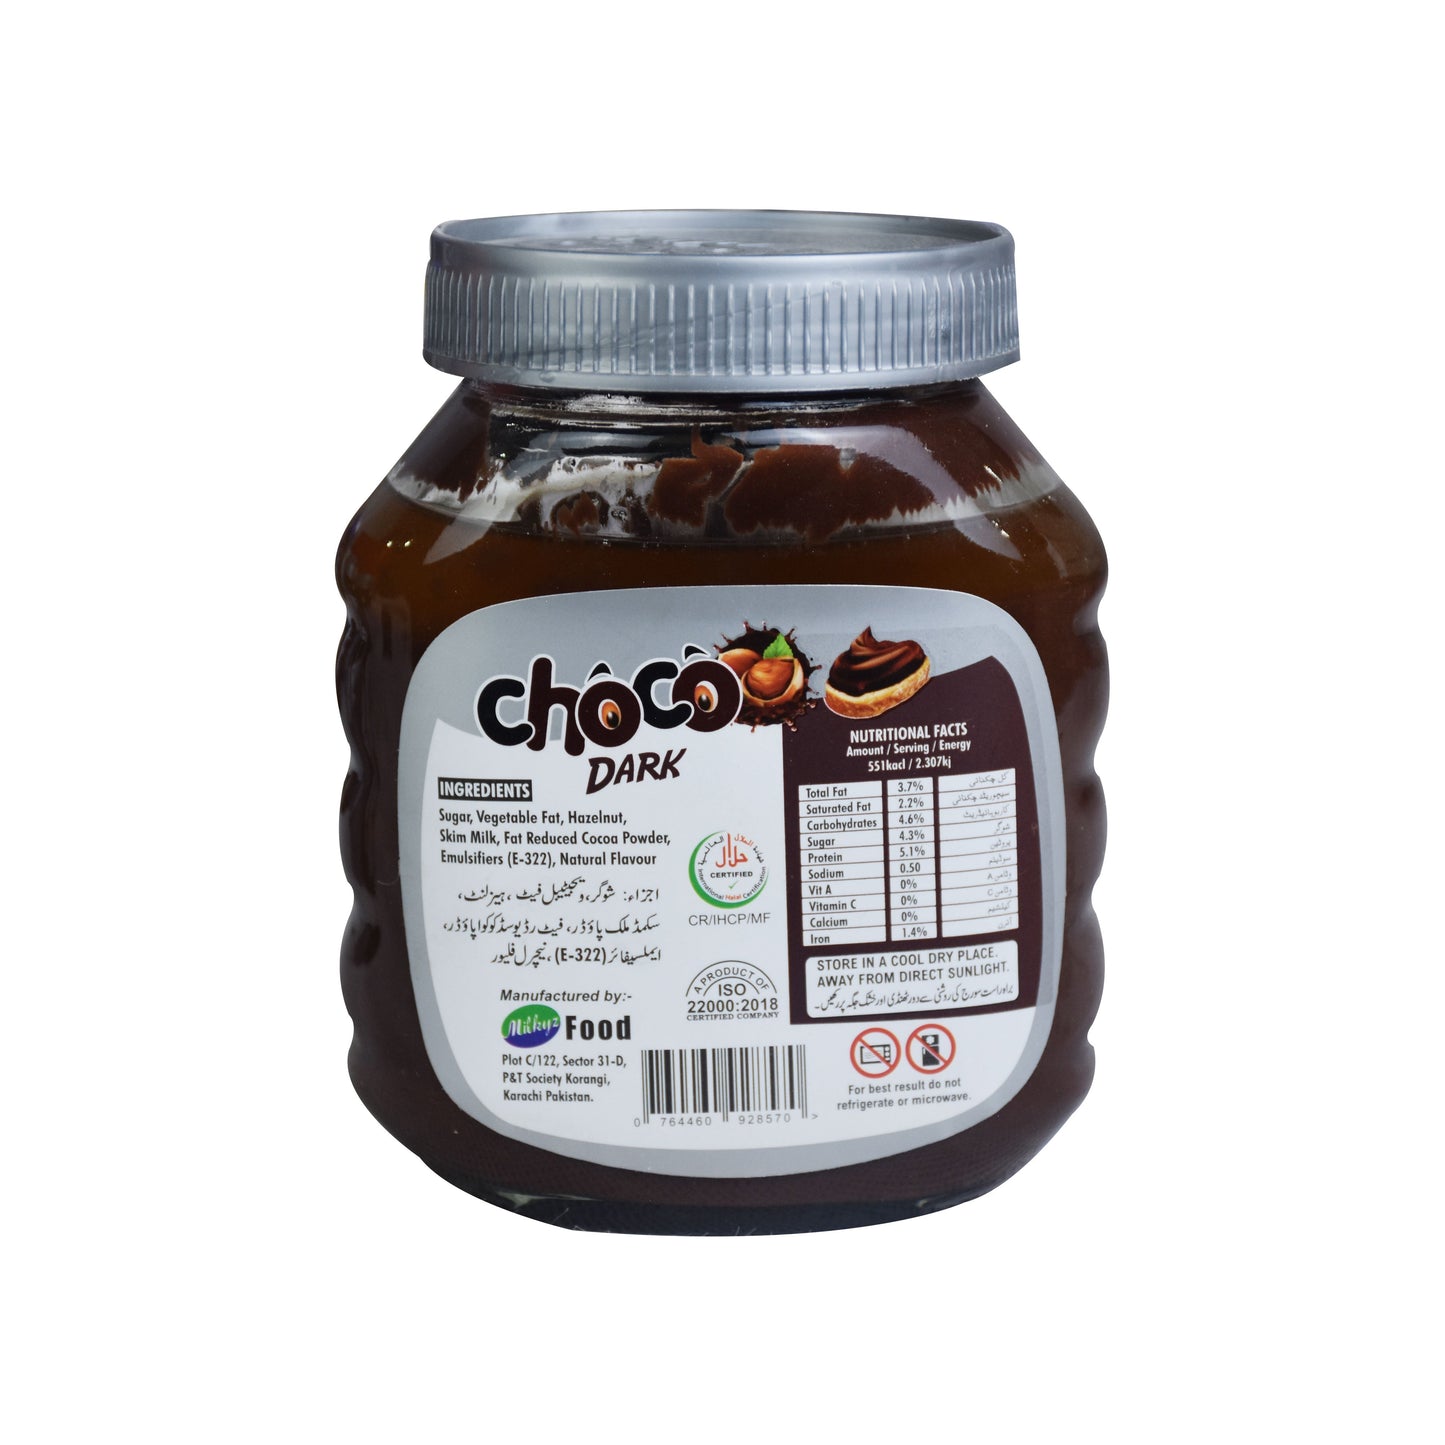 Milkyz Food Choco Dark Double Chocolate Spread With Hazelnut 650g Jar Bottle